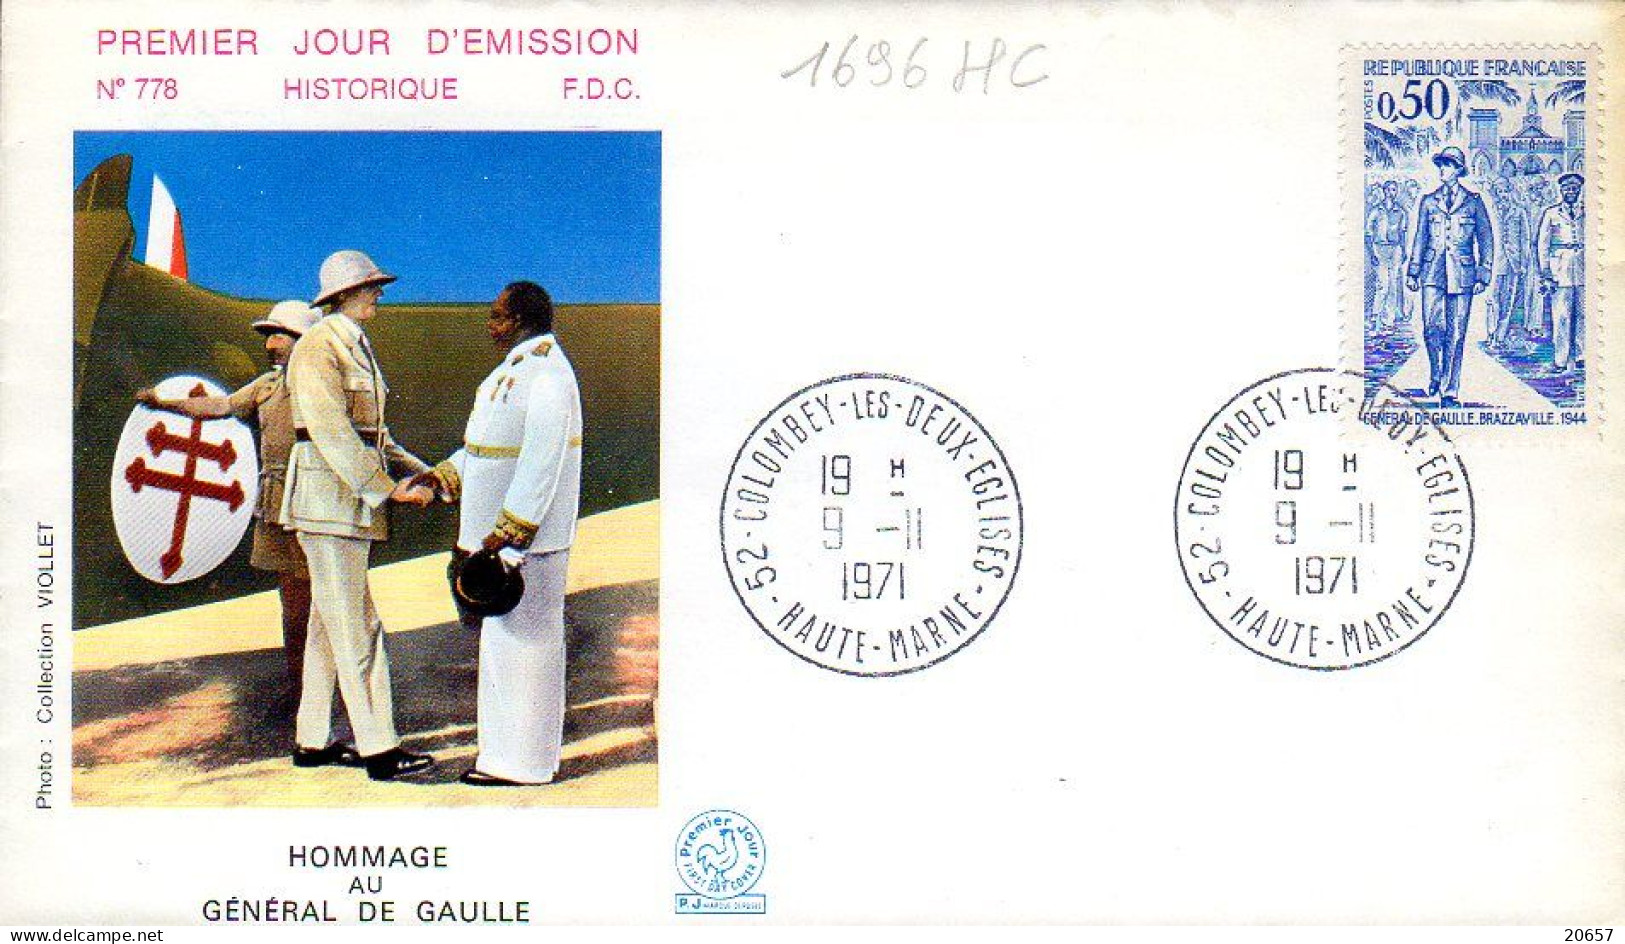 France 1696HC Fdc Hommage Au Général De Gaulle - De Gaulle (Generale)